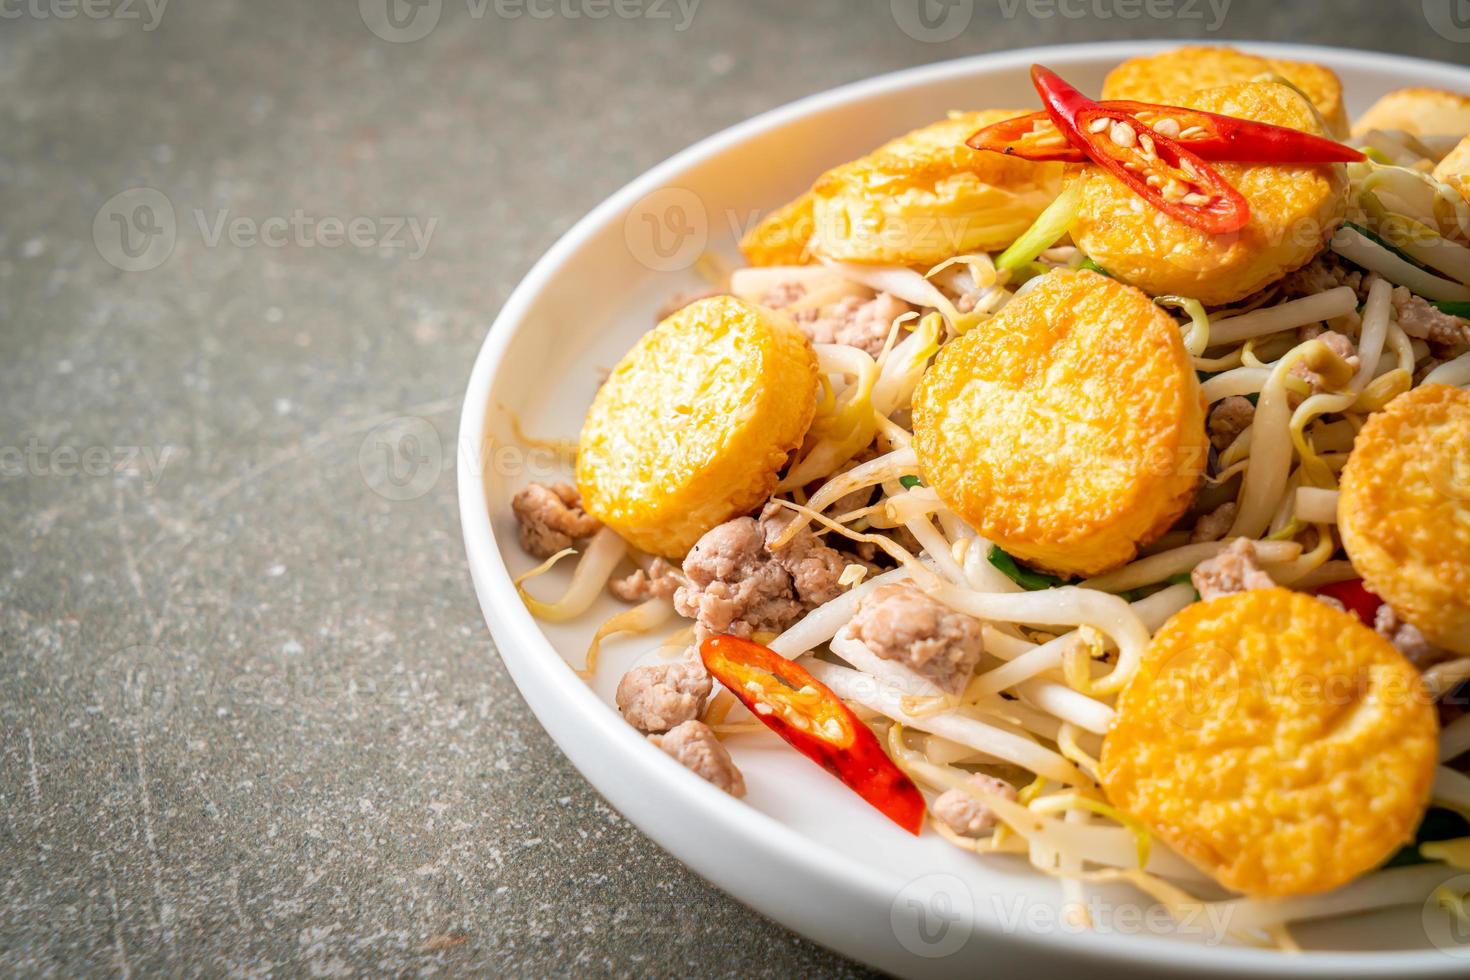 germogli di soia saltati in padella, tofu all'uovo e carne di maiale macinata - stile asiatico foto